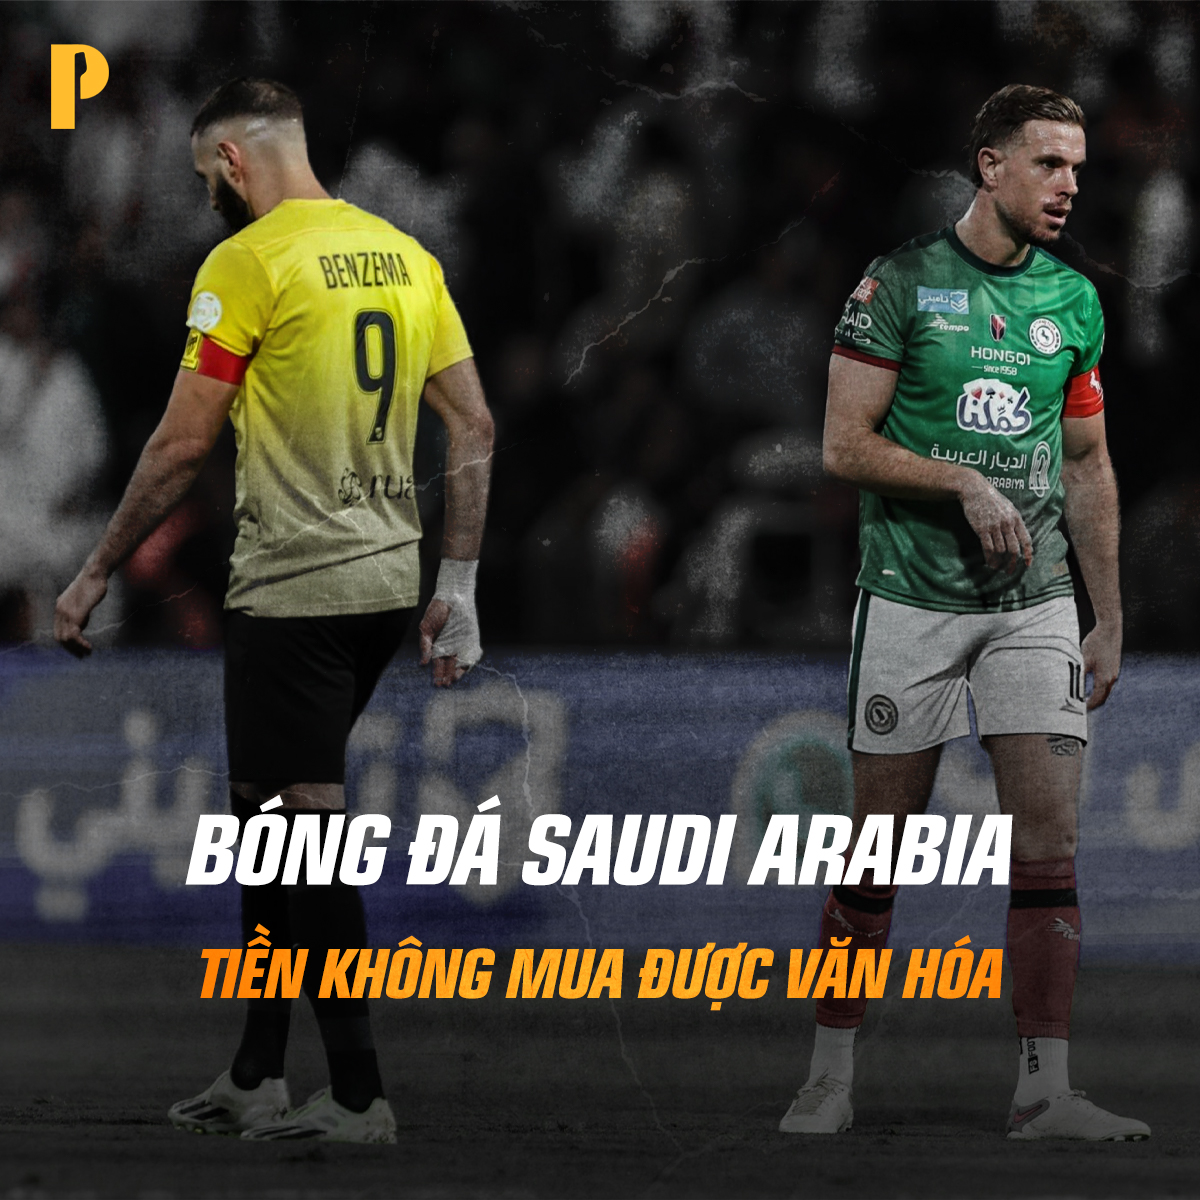 Ở Saudi Arabia chỉ có tiền chứ không có bóng đá